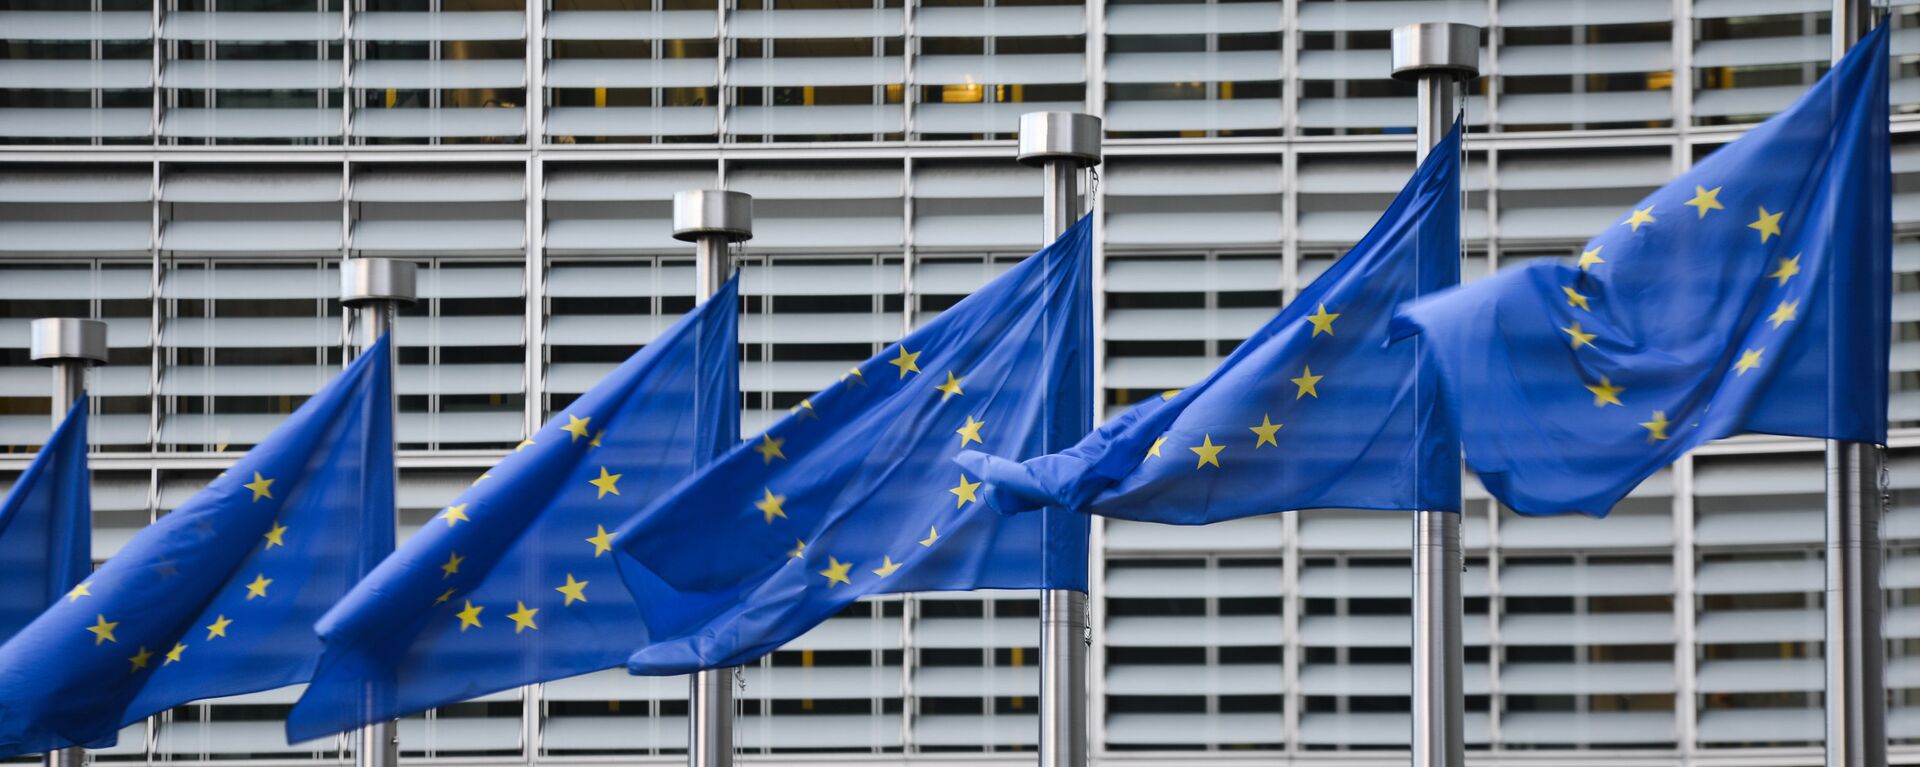 Флаги Евросоюза у здания штаб-квартиры Европейской комиссии в Брюсселе - Sputnik Латвия, 1920, 14.07.2021